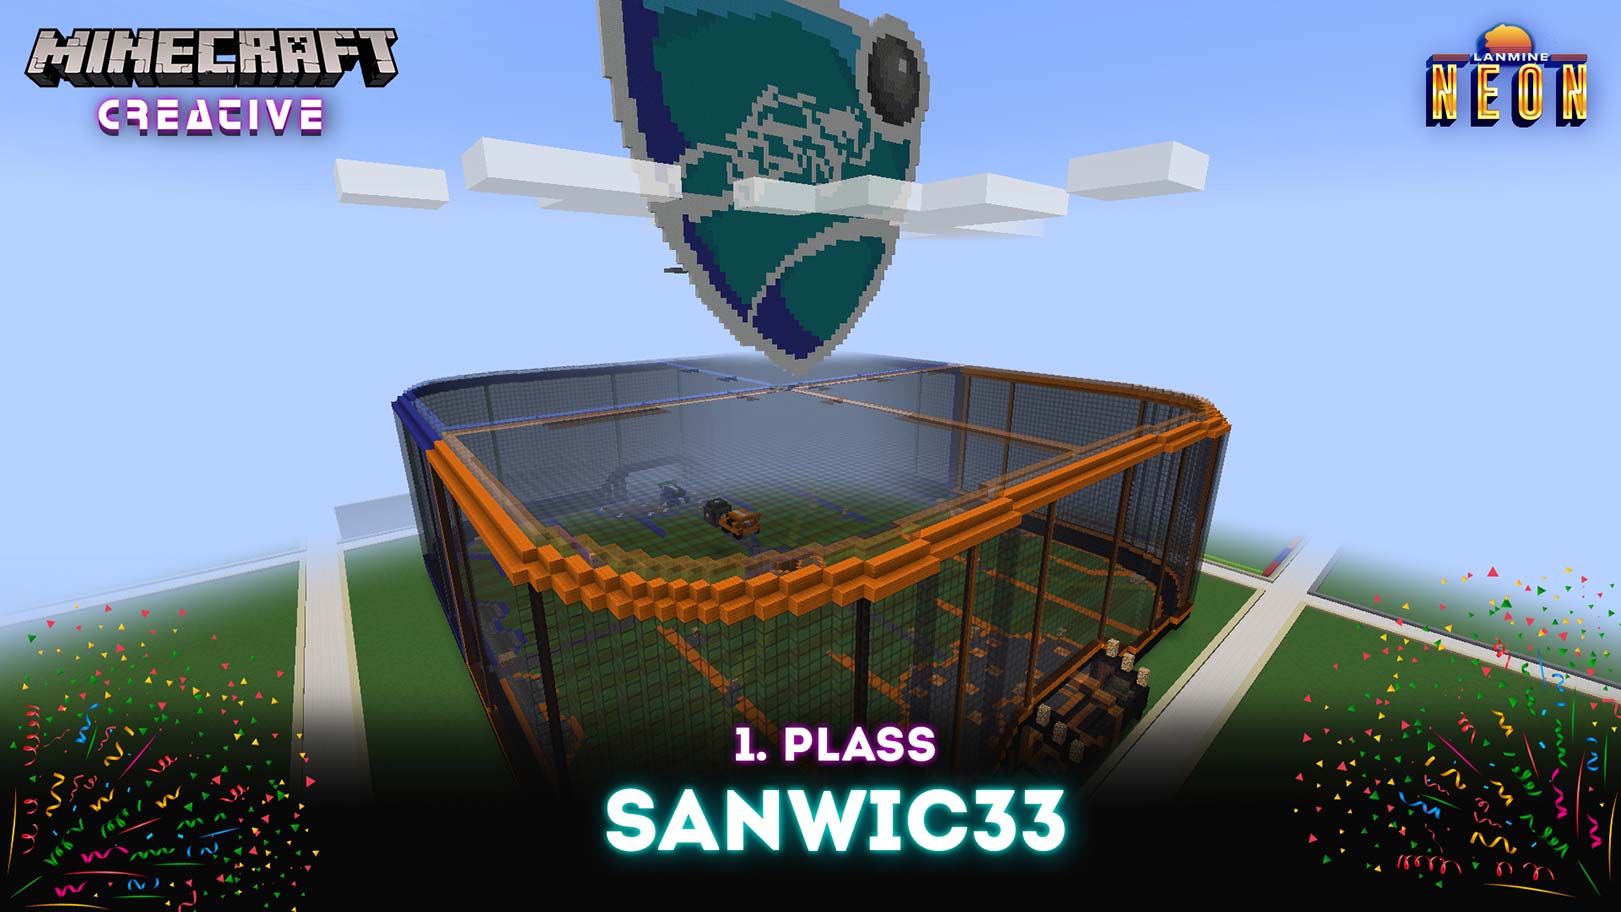 Rocket league stadion laget av Sanwic33 til Minecraft turnering på LANmine 32 neon